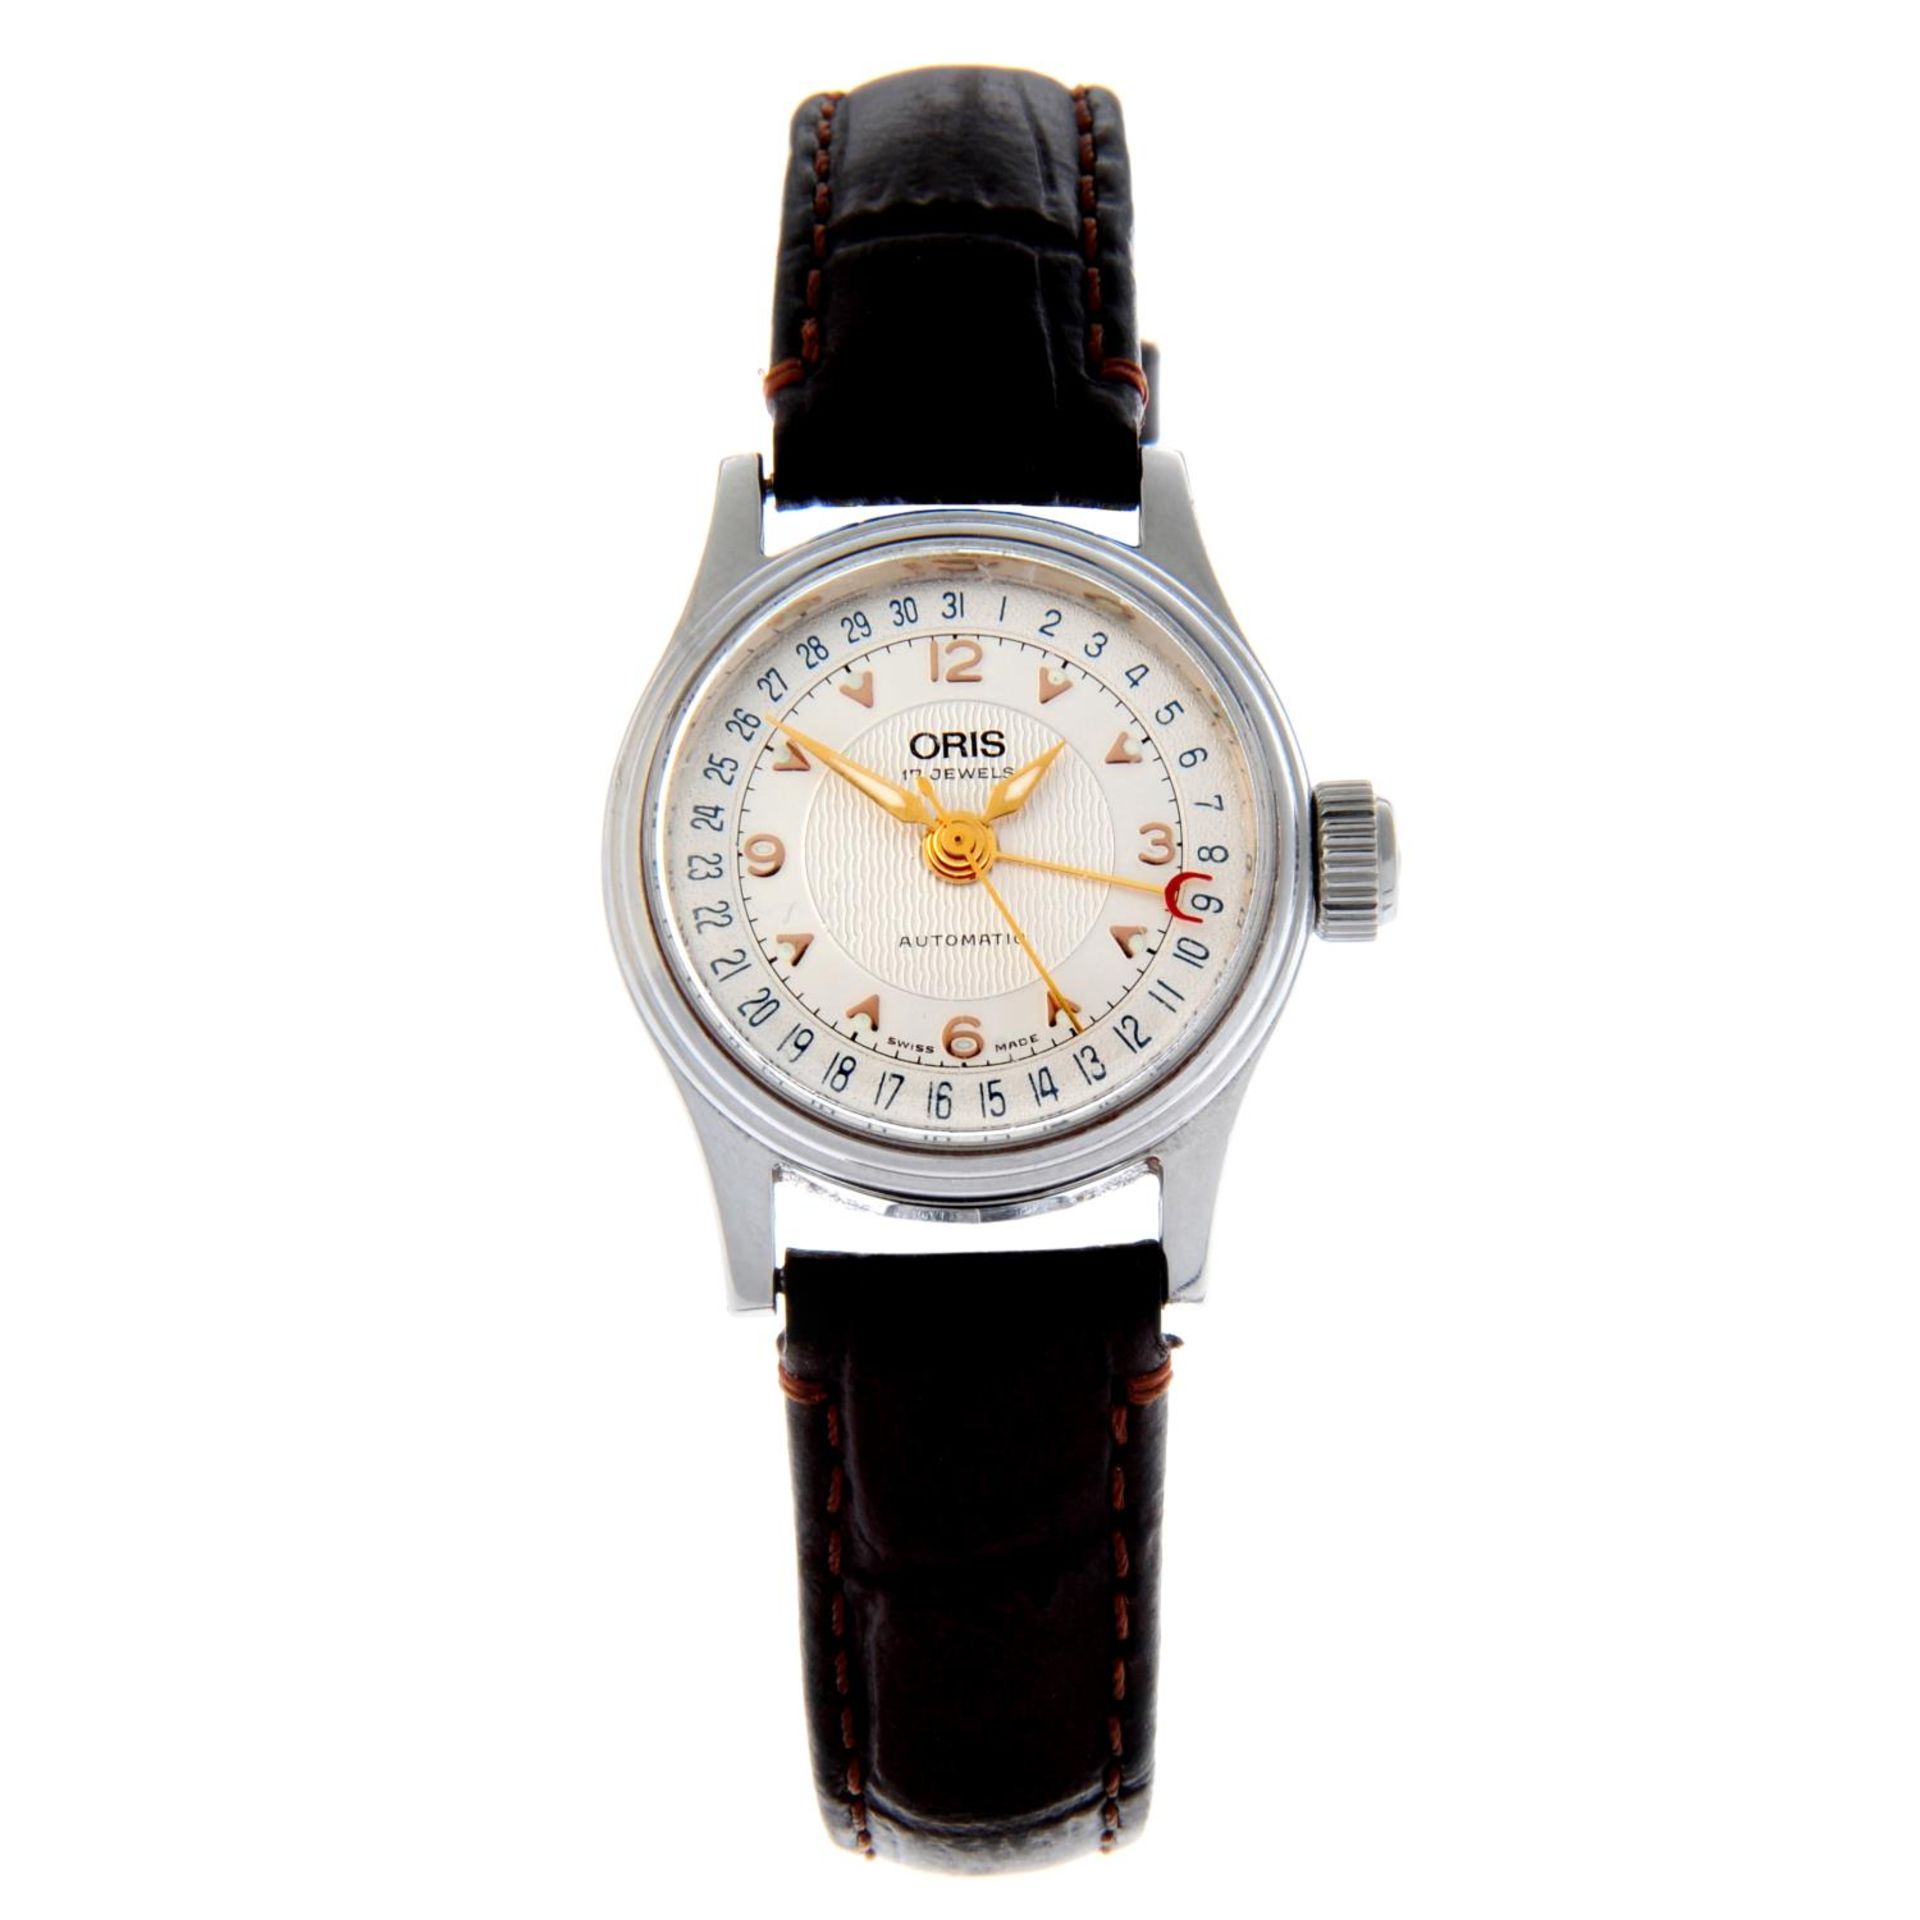 ORIS - a Pointer Date wrist watch.